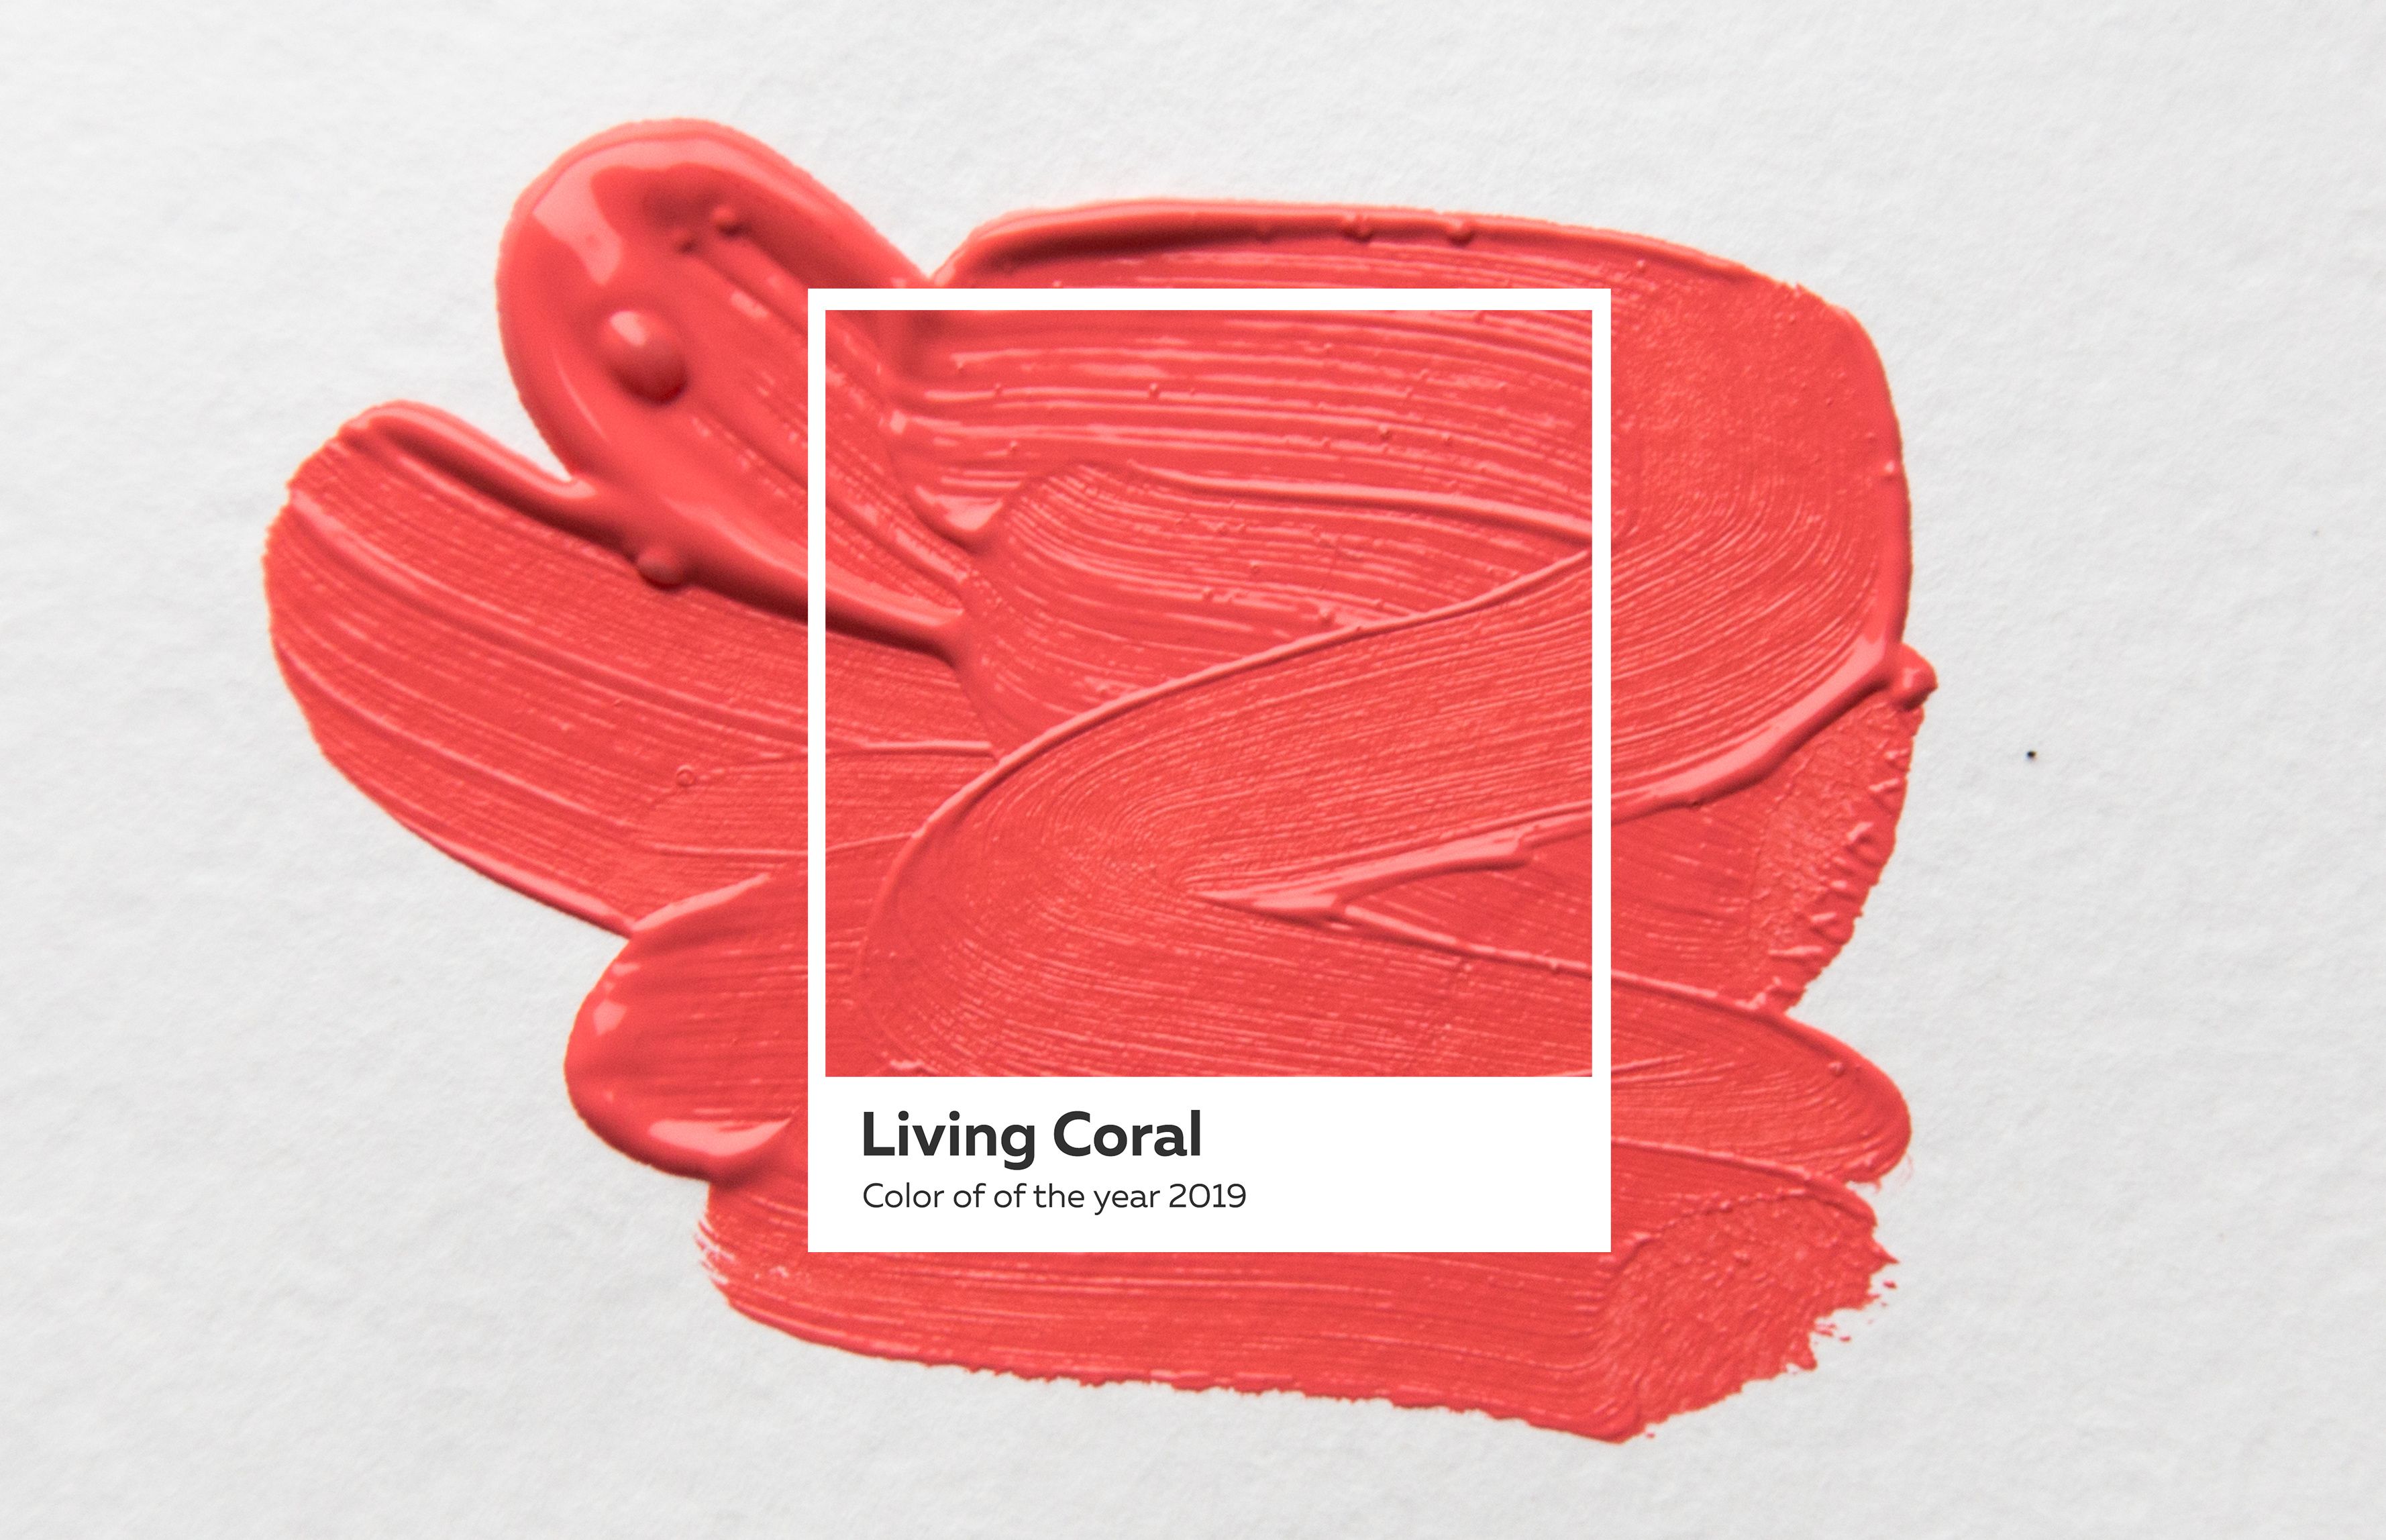 Voici la couleur Pantone de l'année 2019 : Living Coral !